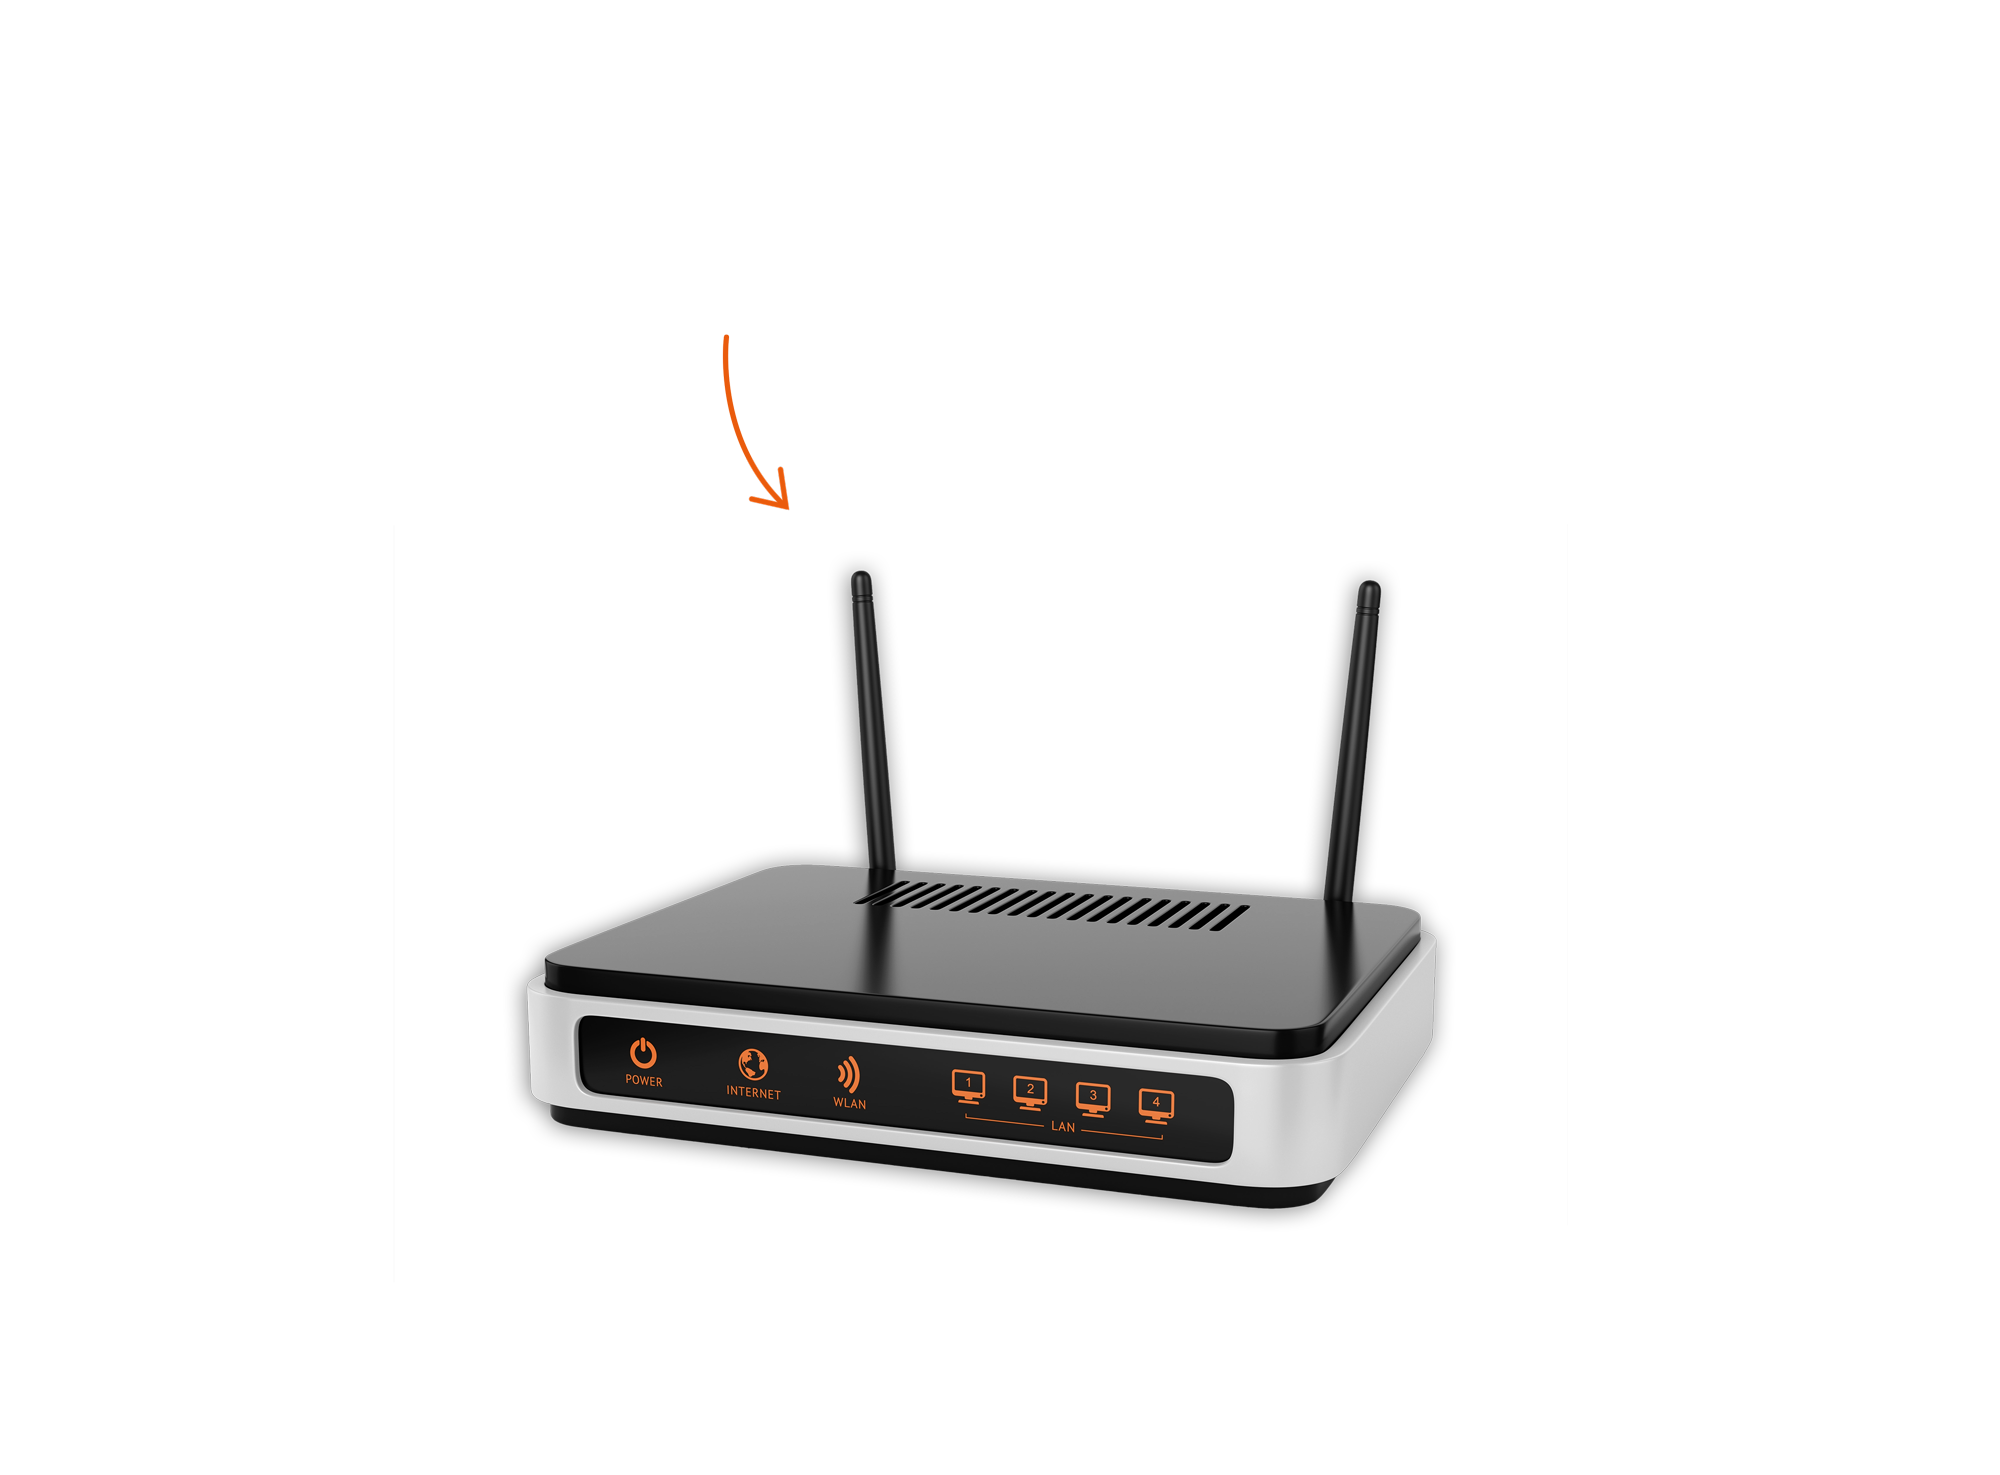 "Schnell eingerichtet und optimal vernetzt" steht neben einem Foto von einem WLAN-Router